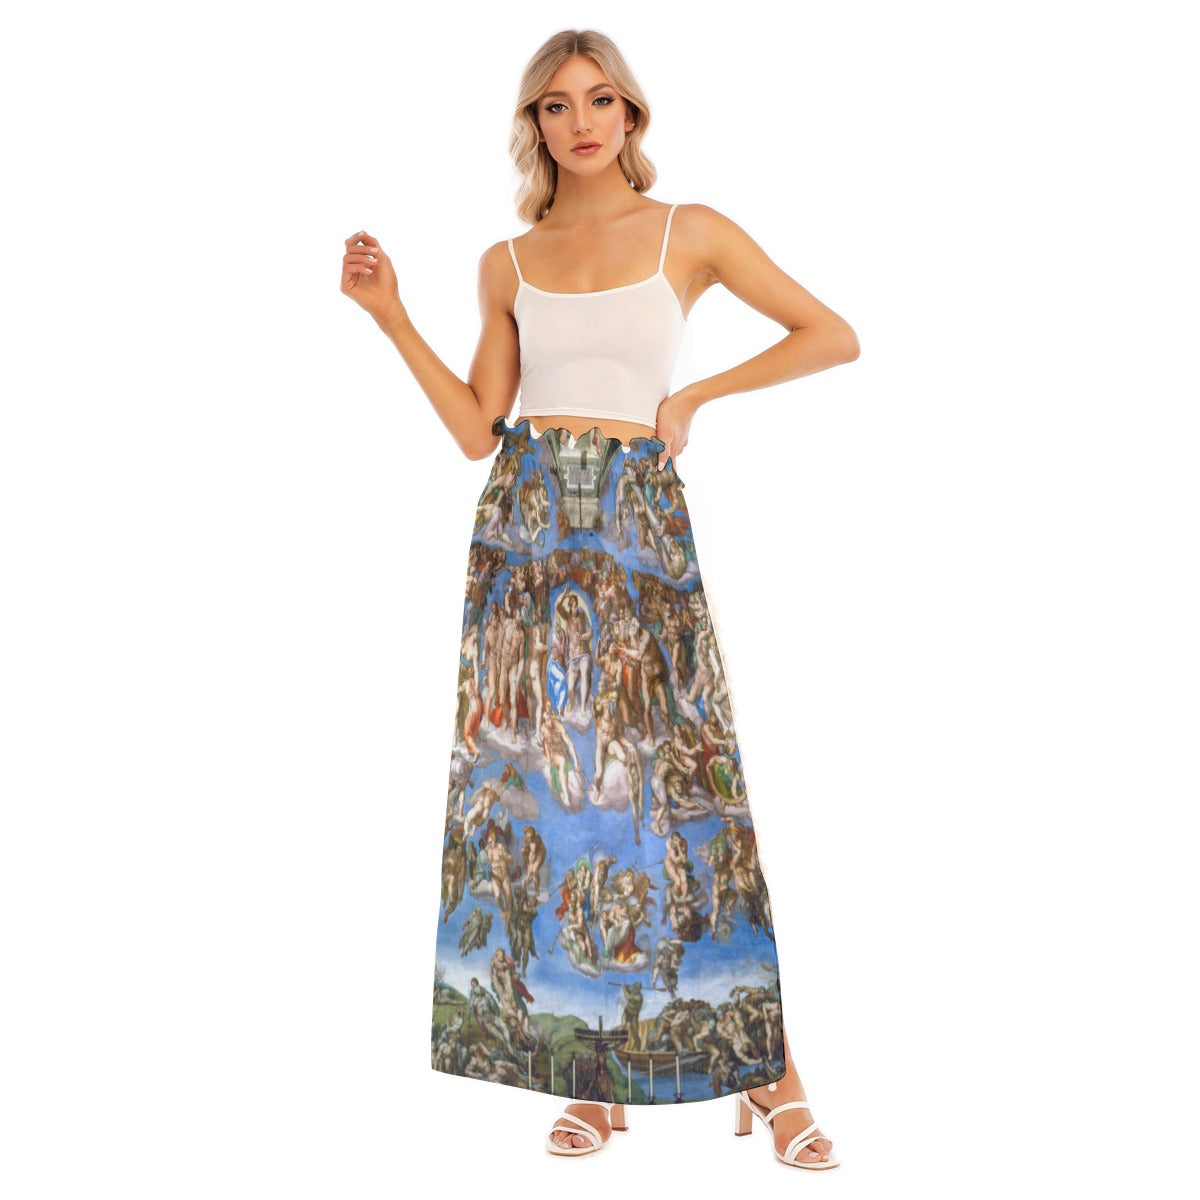 Heavenly-inspired side split skirt